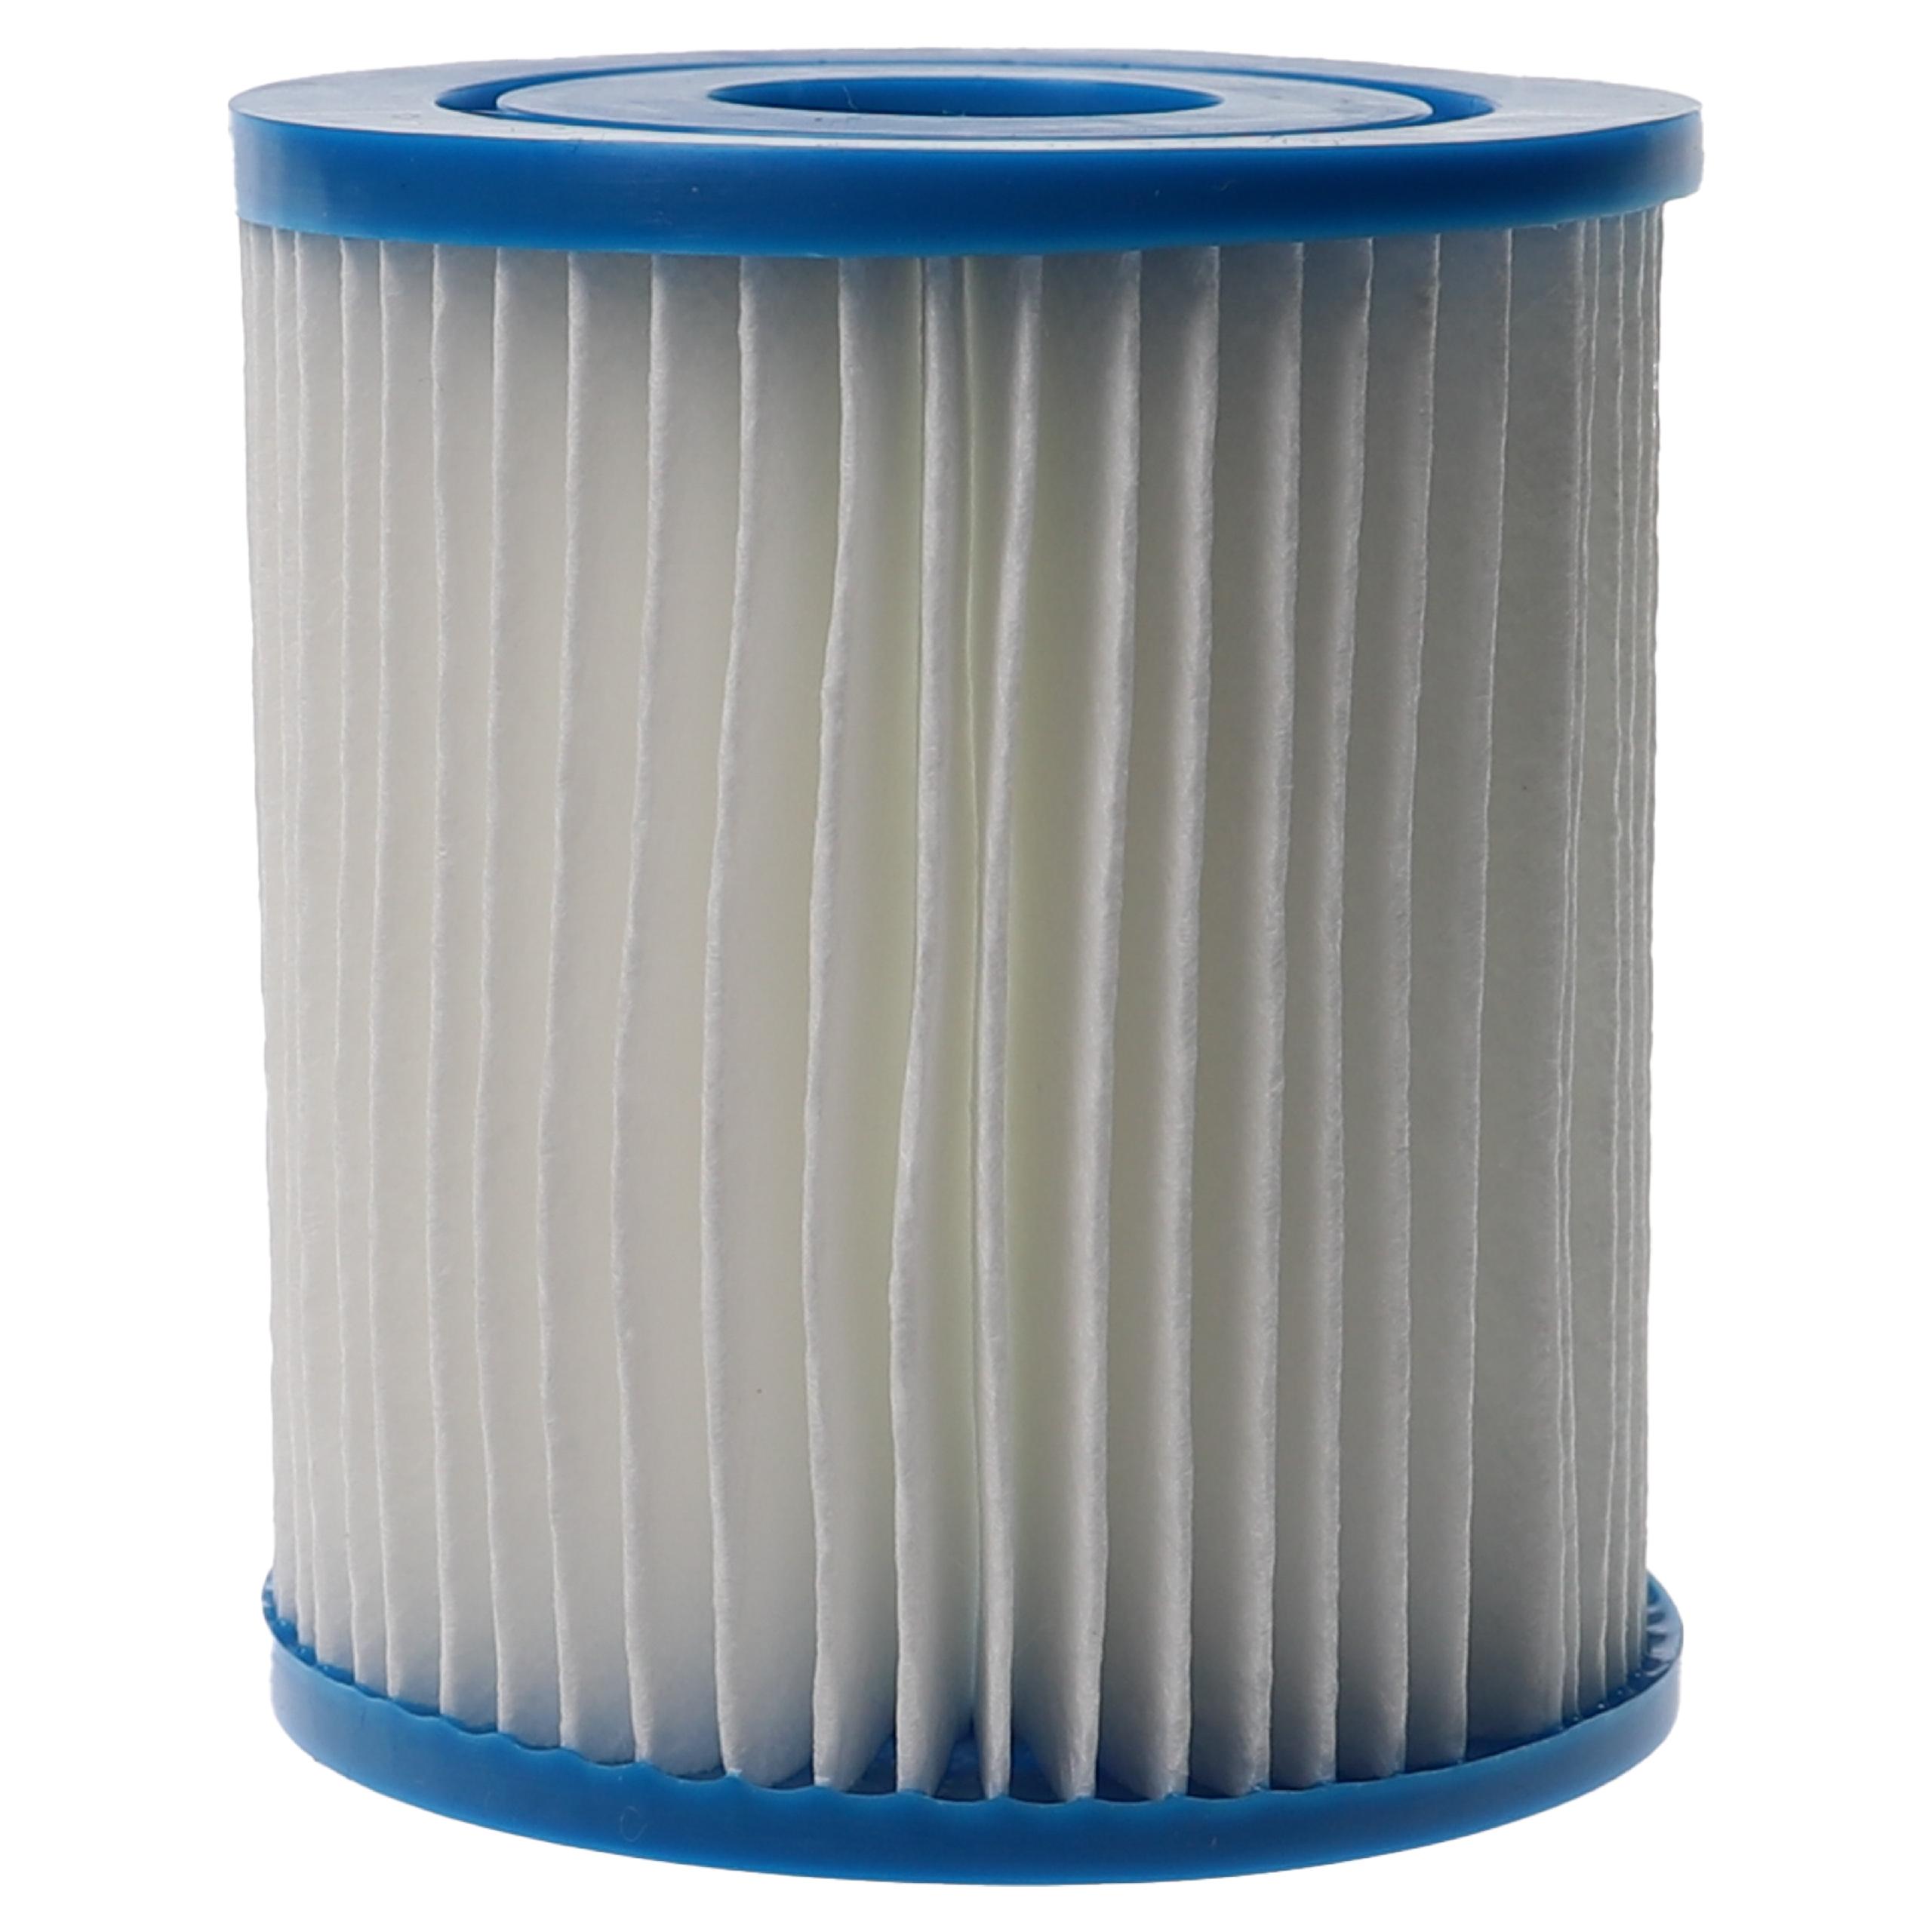 Wasserfilter als Ersatz für APC C7490 für Intex Swimmingpool & Filterpumpe u.a. - Filterkartusche